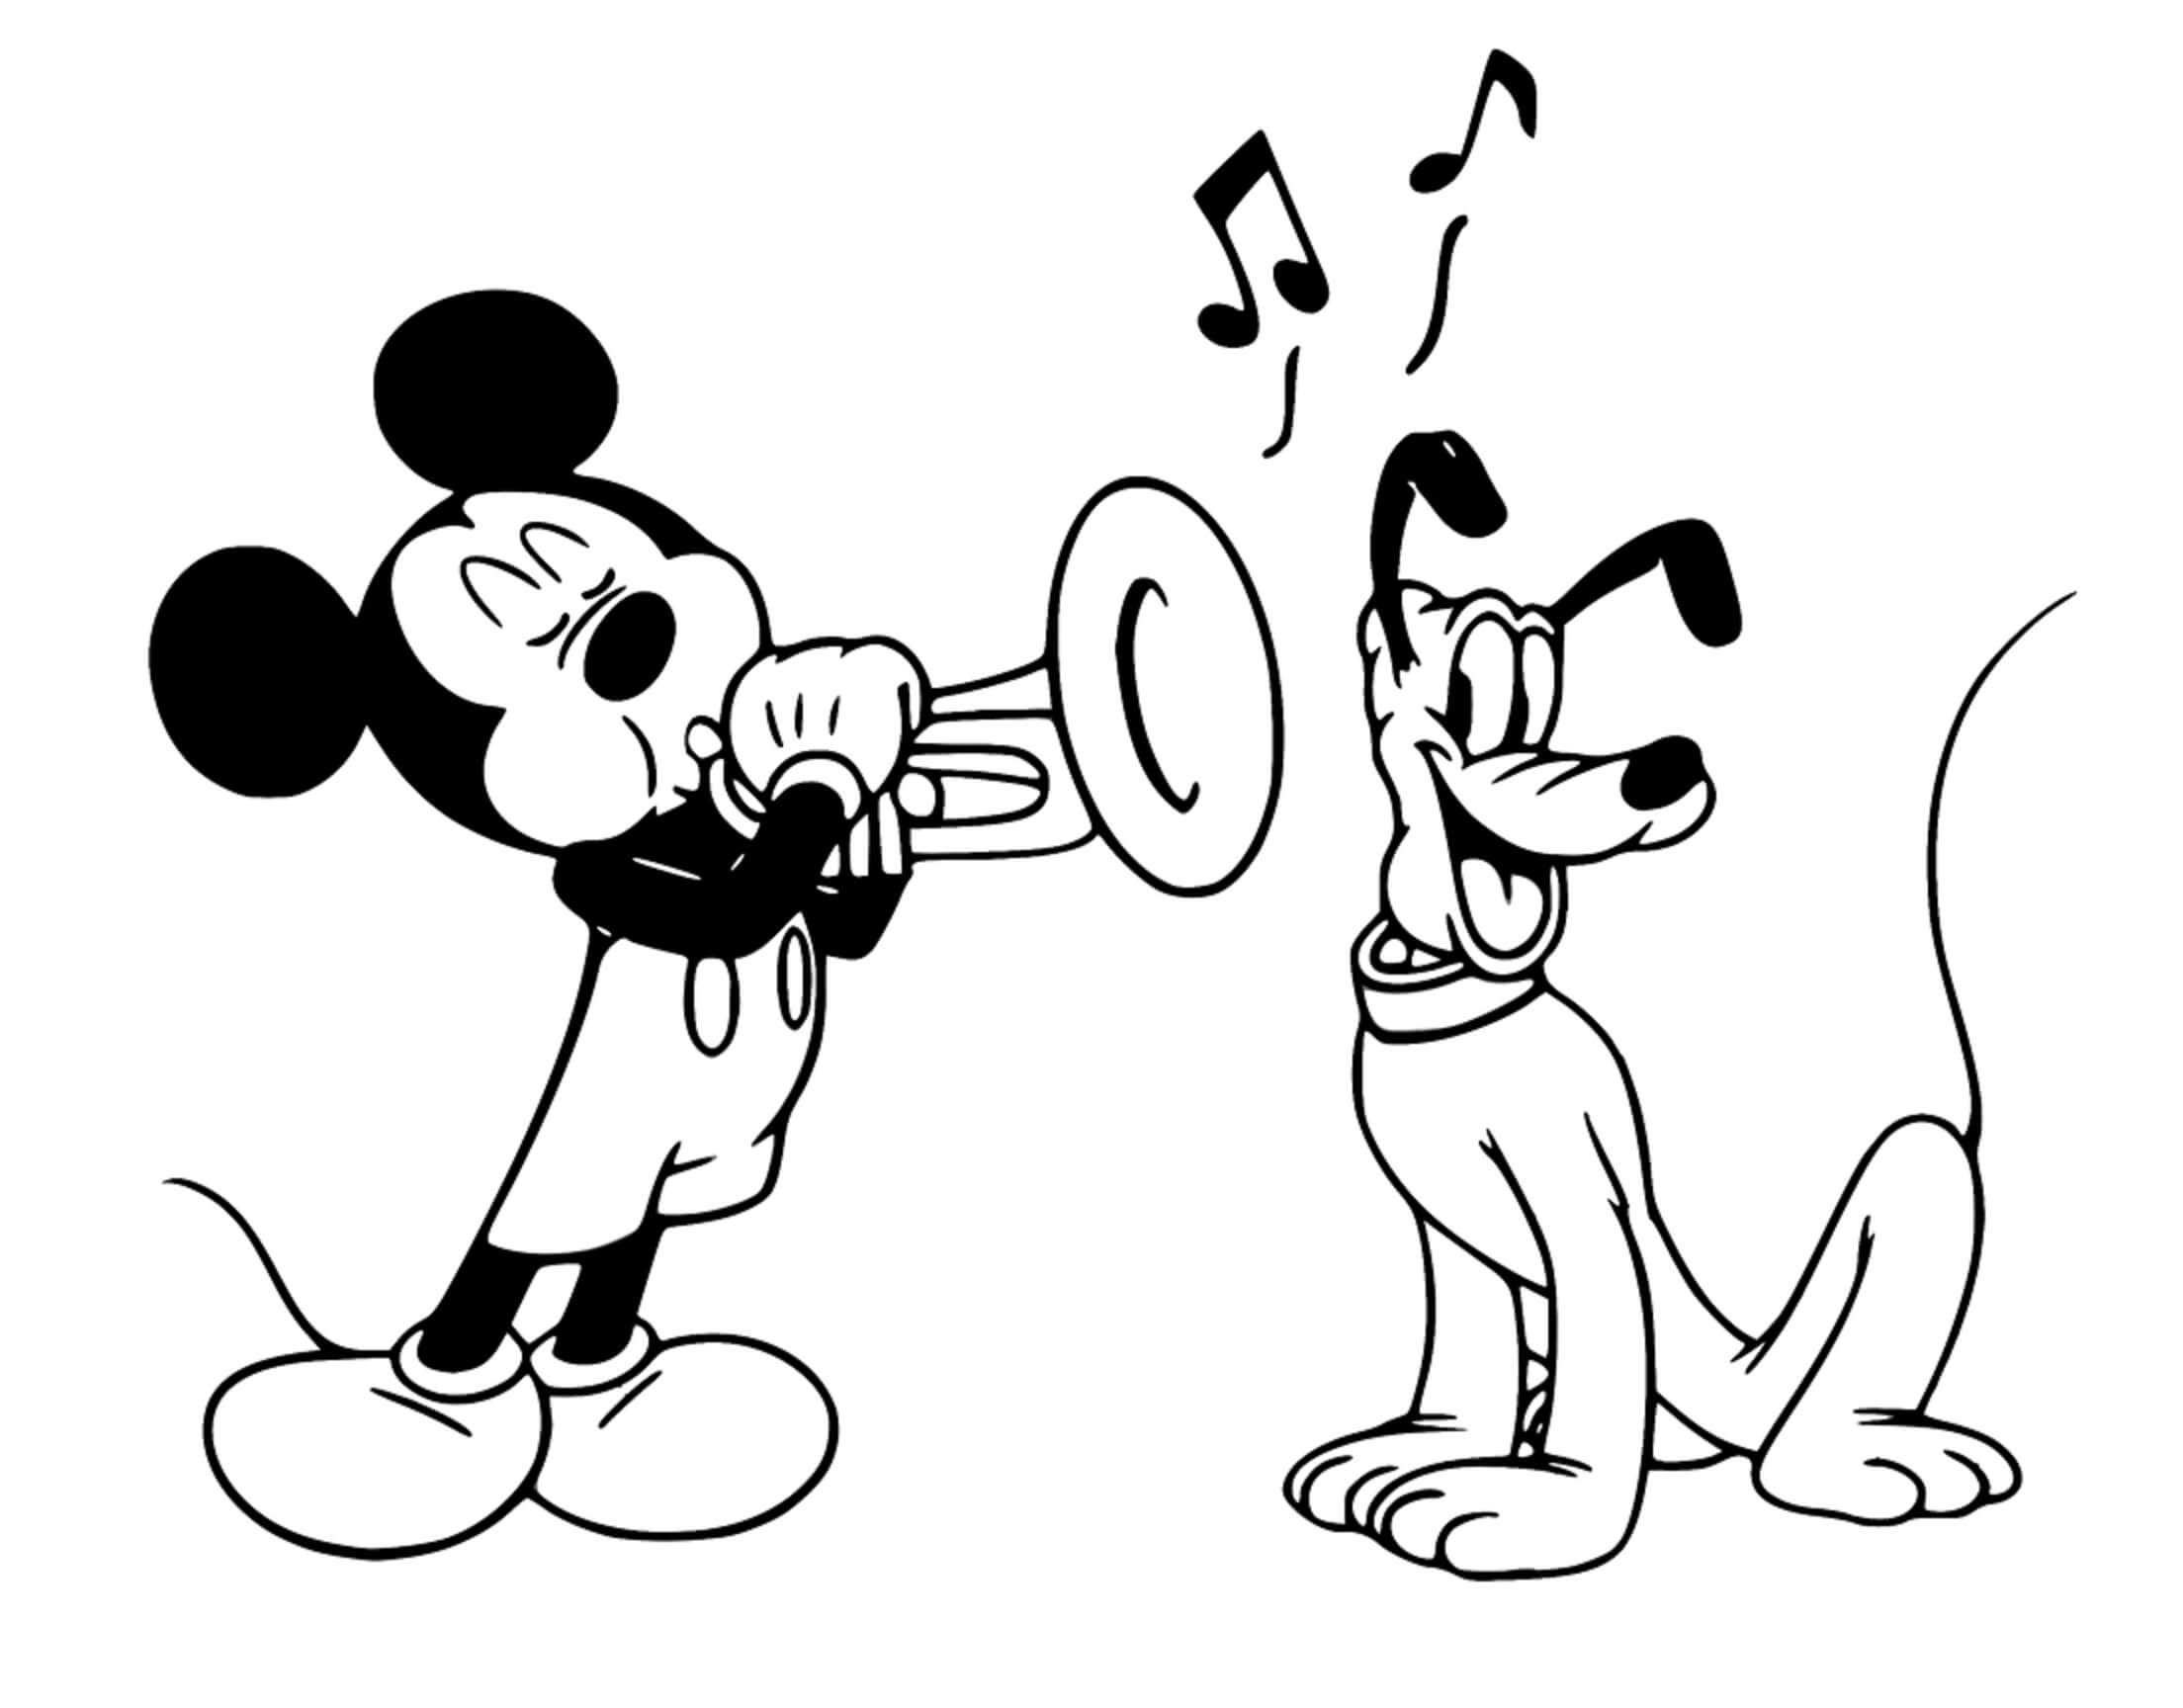 Mickey Spielt die Trompete mit Pluto